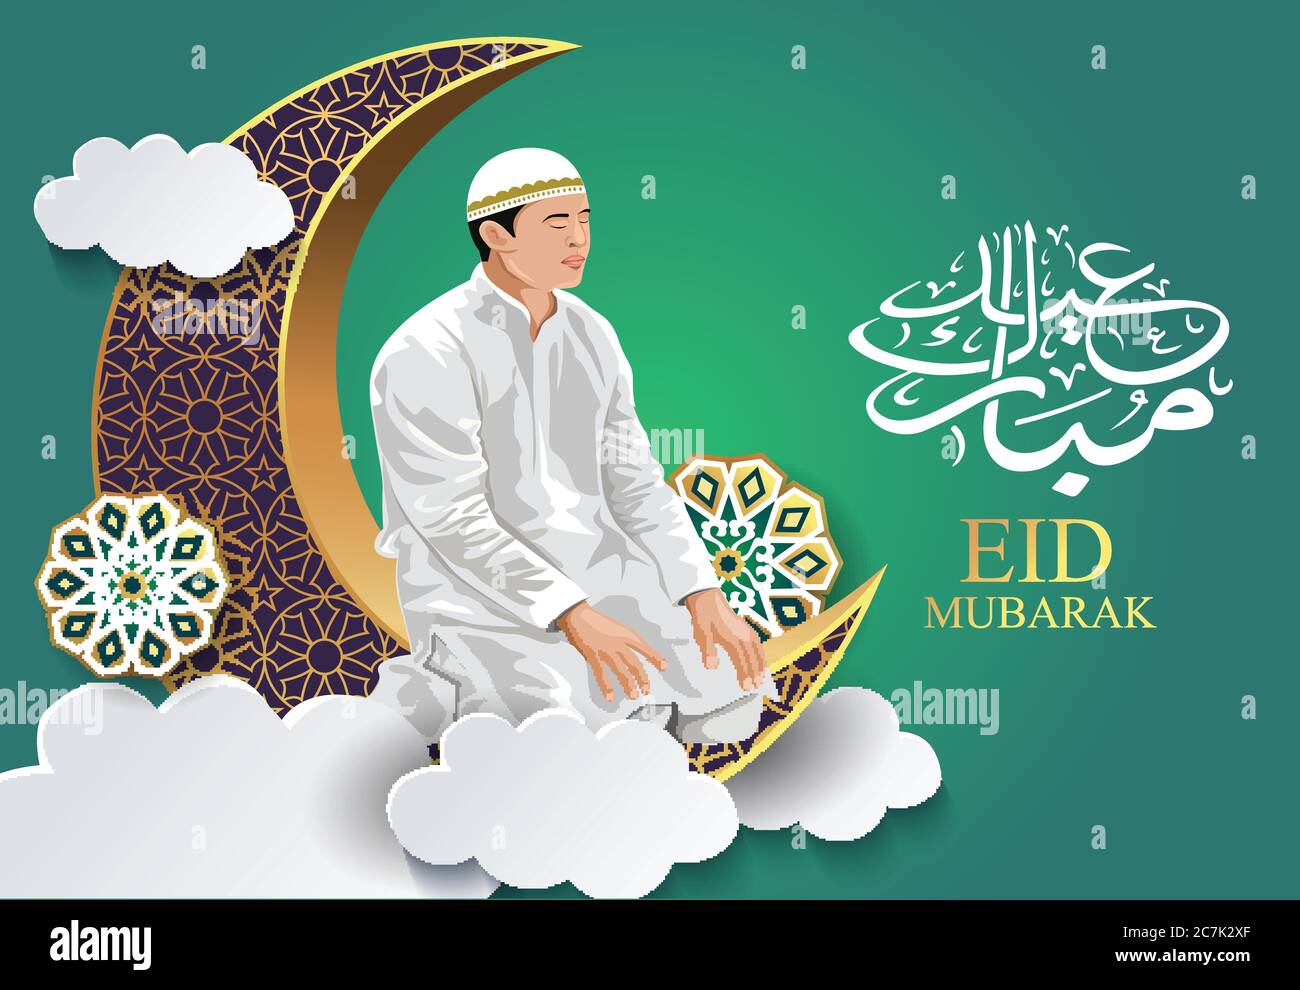 Croquis dessiné à la main de l'homme musulman qui priait avec la calligraphie de l'illustration d'Eid Mubarak. croissant 3d en arrière-plan. Illustration de Vecteur